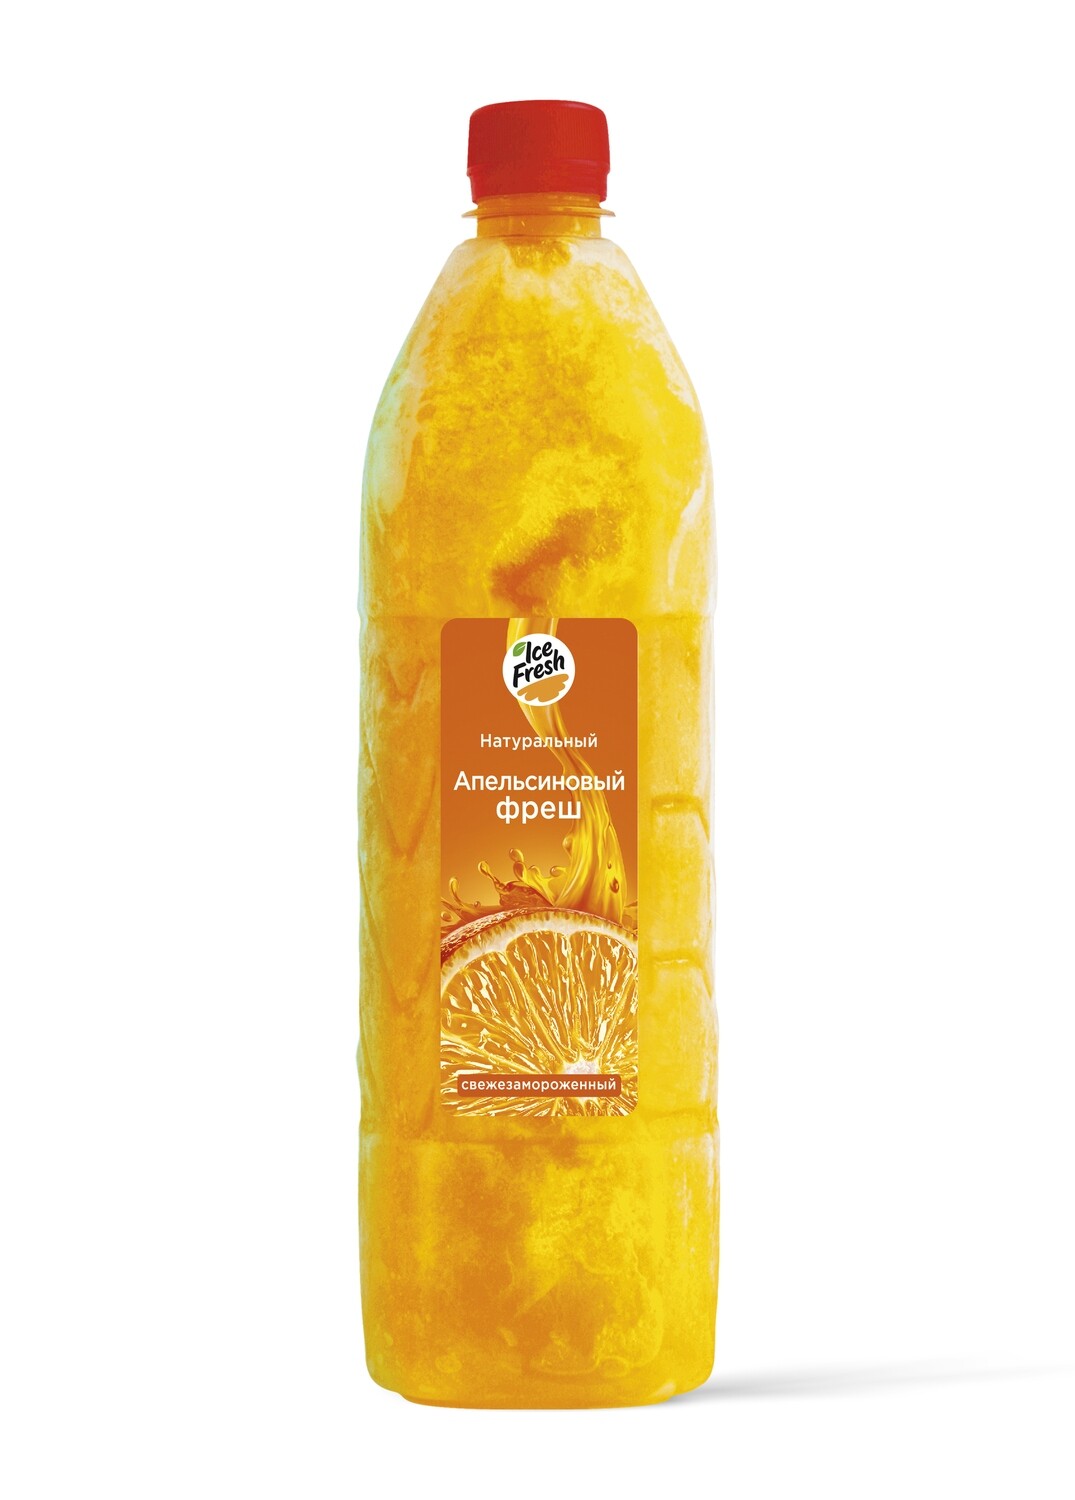 Сок апельсиновый прямого отжима, замороженный, 1 Л. (упаковка, 6 бутылок)